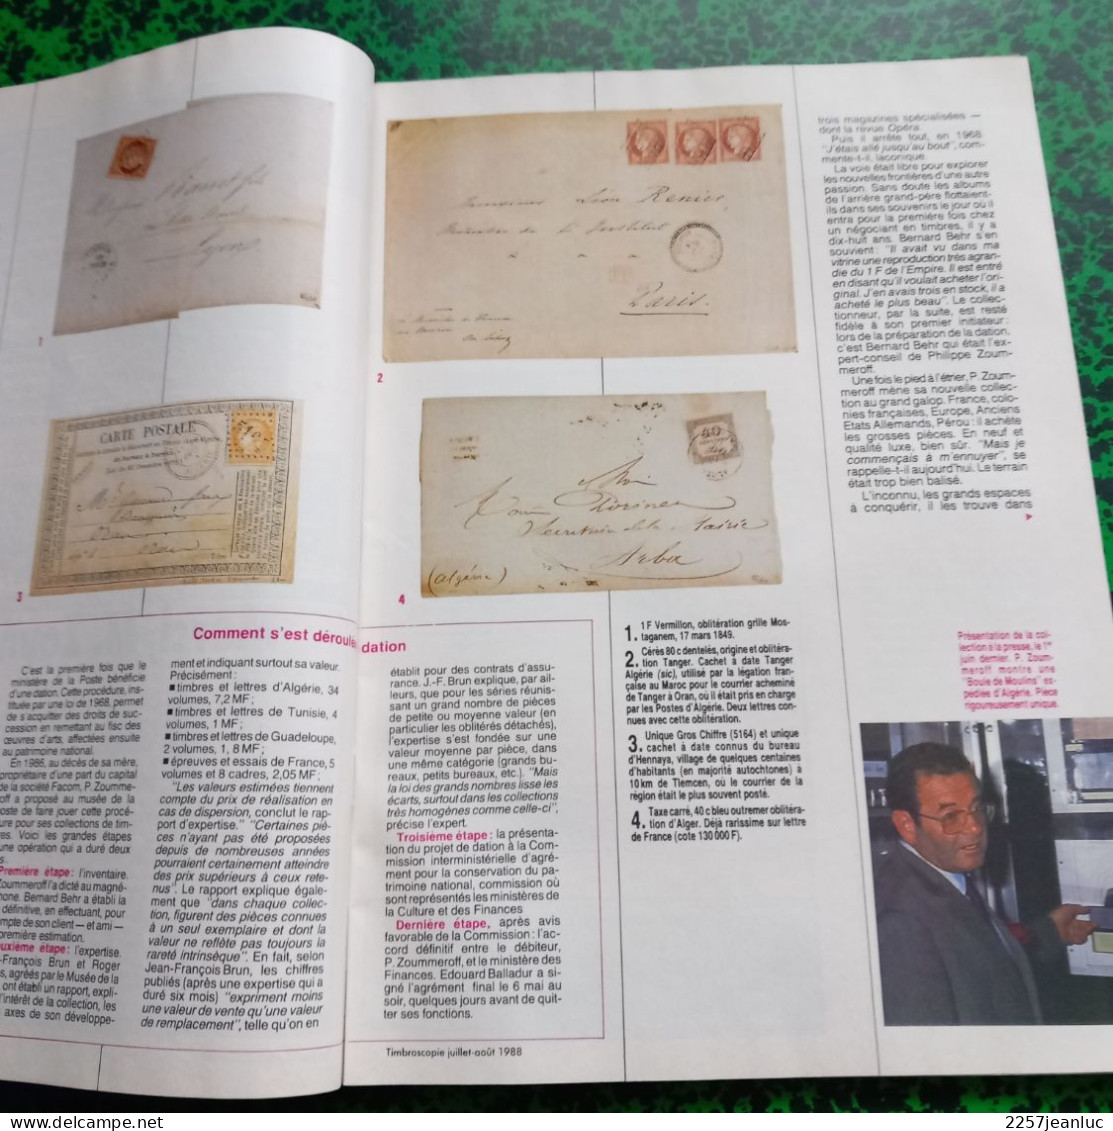 Lot 2 Magazines de la Philatélie * Timbroscopie n:38 et 49 de Juillet Aout 1987/88 Spécial été